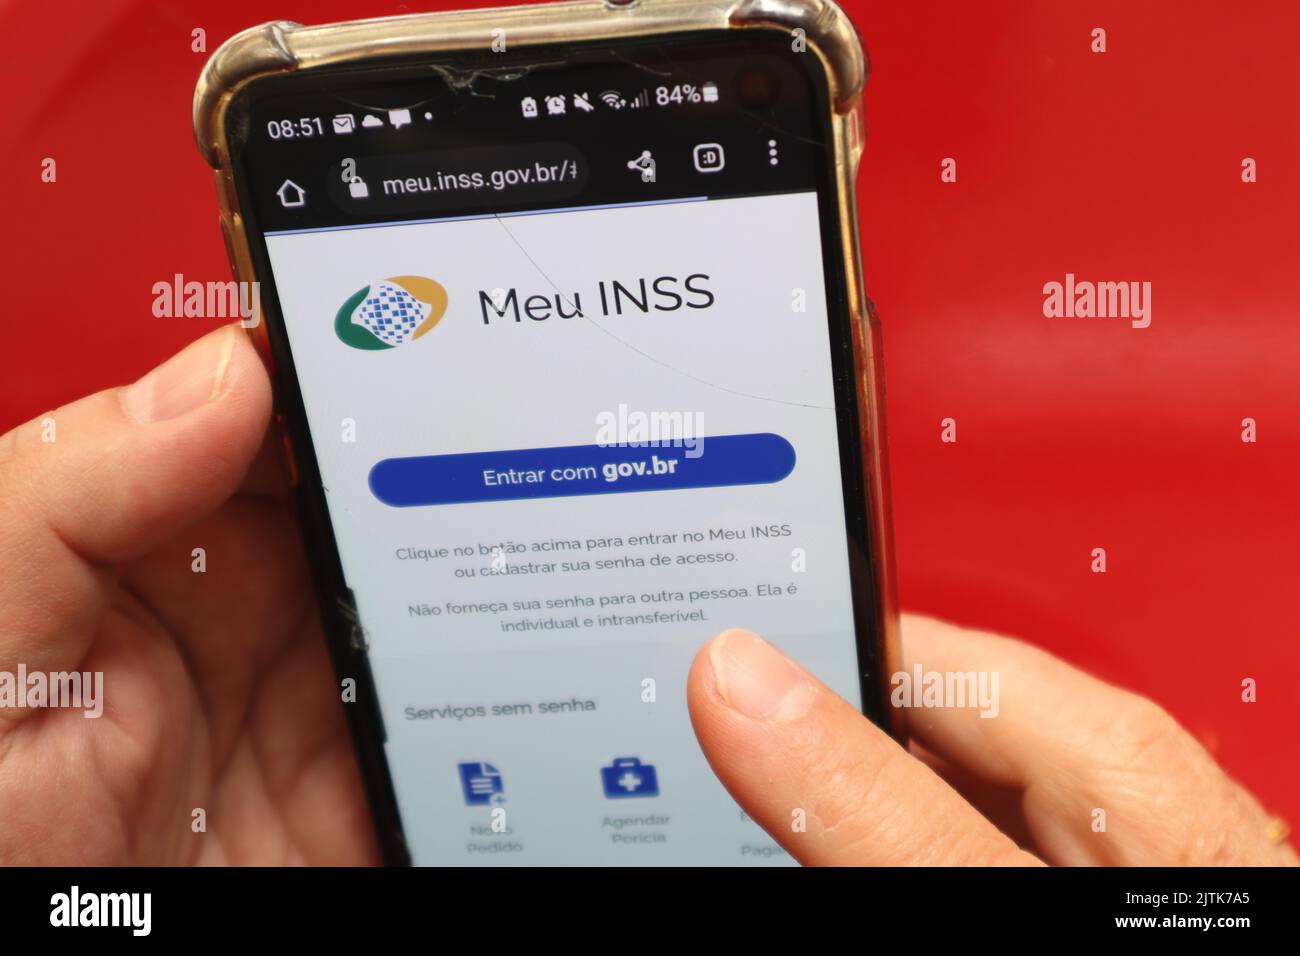 Vista superior de la pantalla táctil del smartphone que muestra el sitio Meu INSS brasileño, con fondo de color rojo. Foto de stock